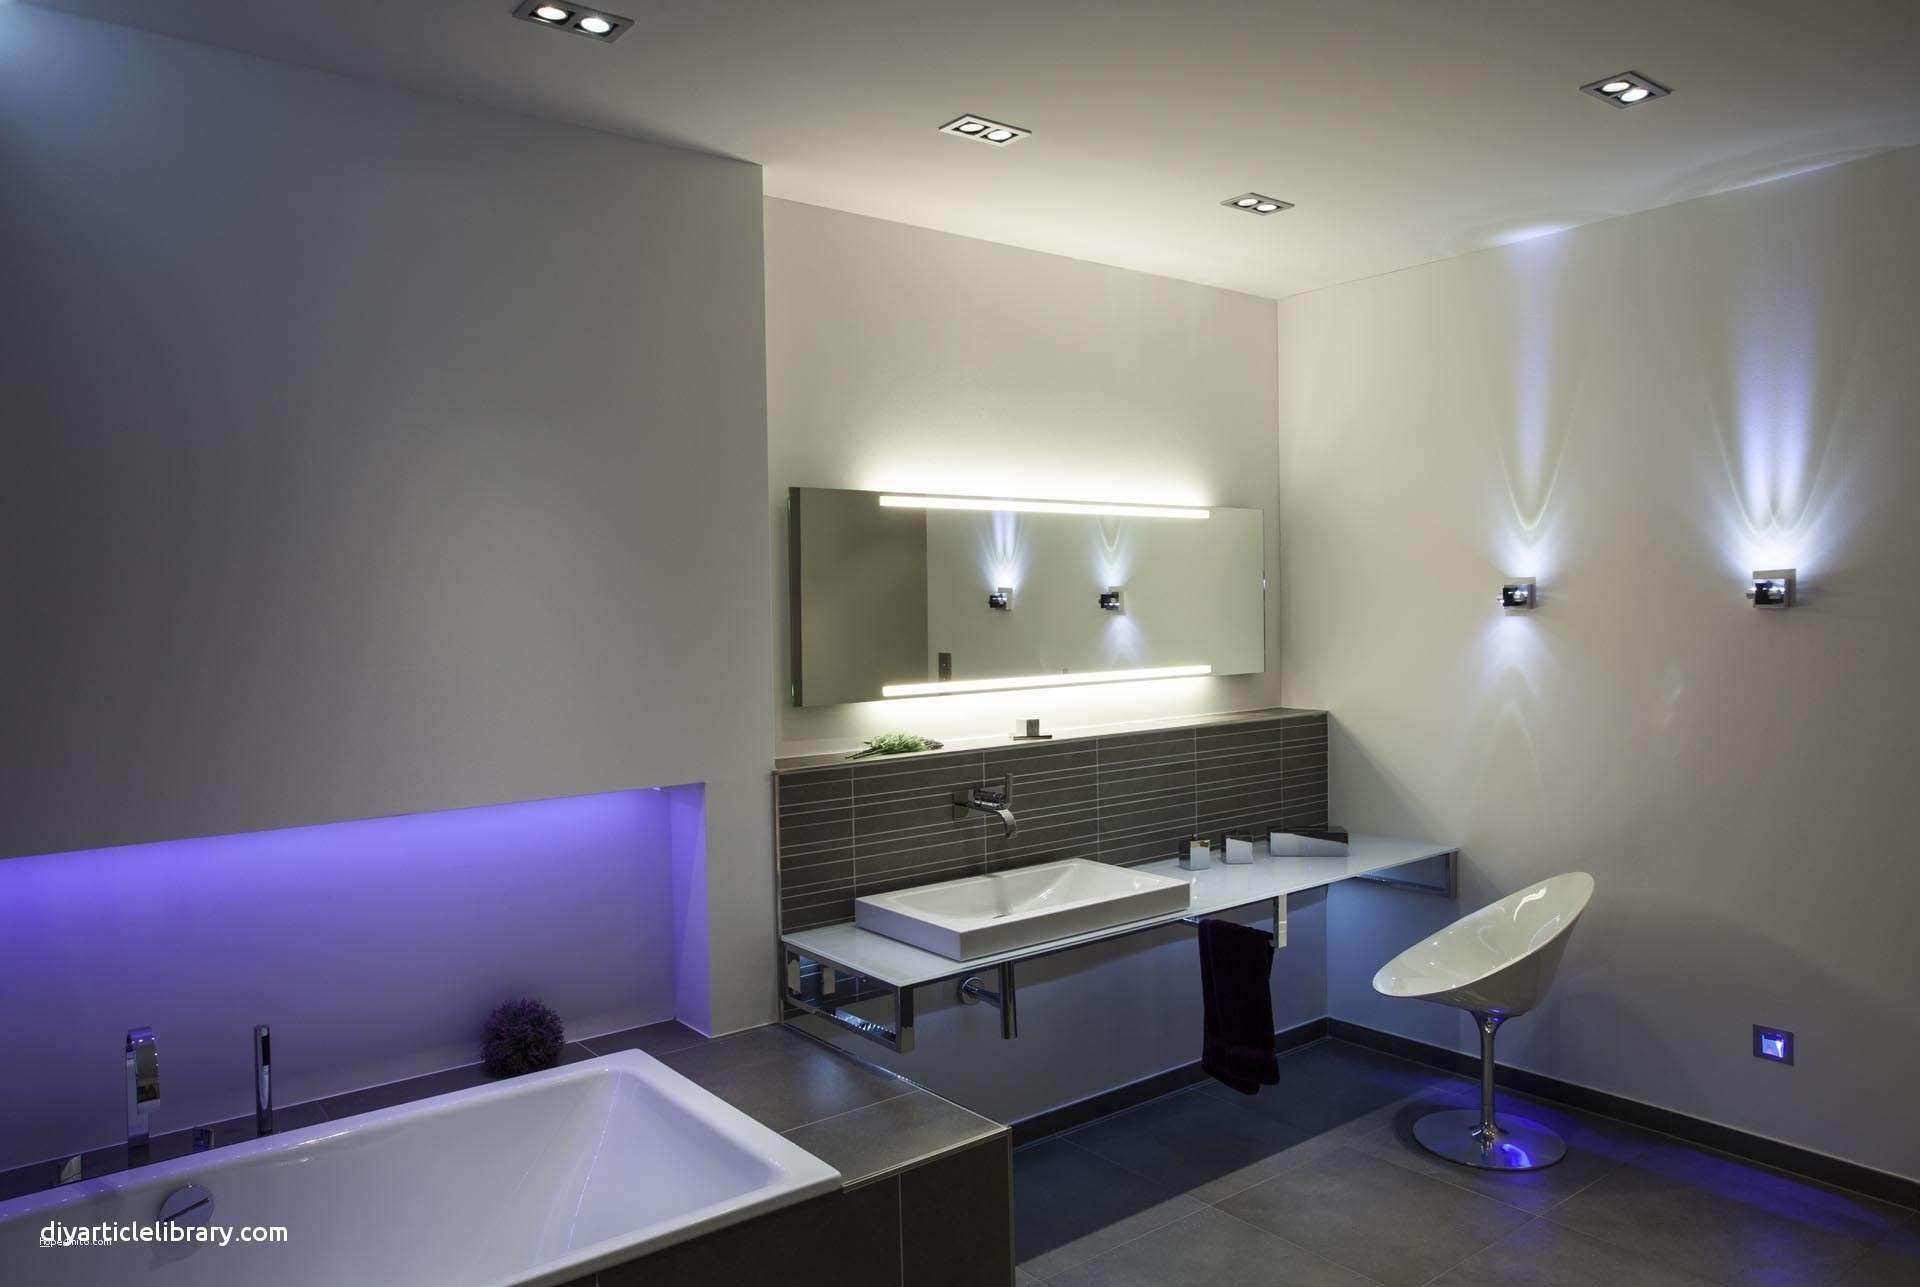 diy wohnzimmer einzigartig licht beton better badezimmer licht ideen luxus wohnzimmer of diy wohnzimmer